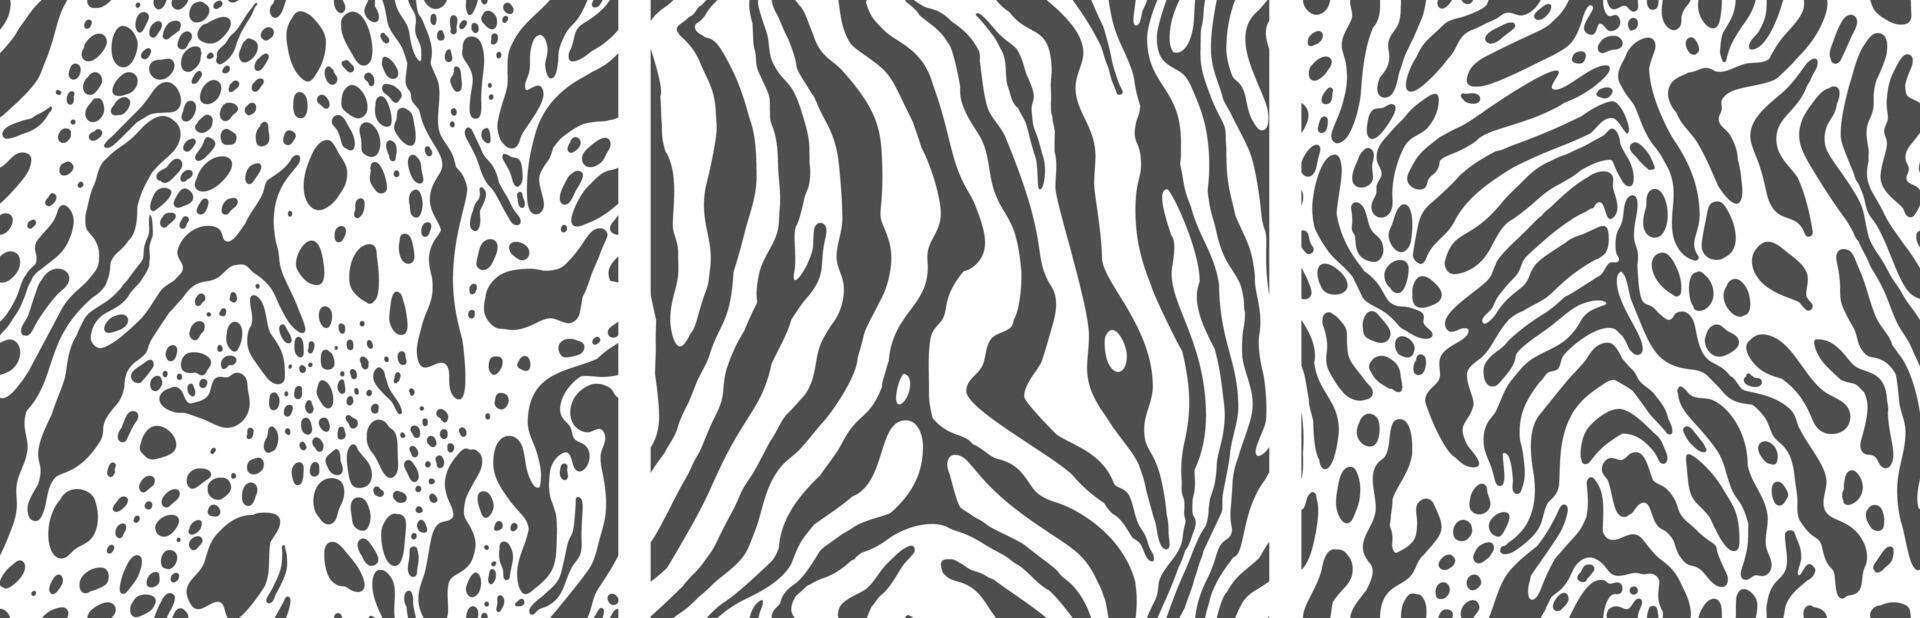 reeks van zebra huid patroon, naadloos texturen voor ontwerp en afdrukken. vector